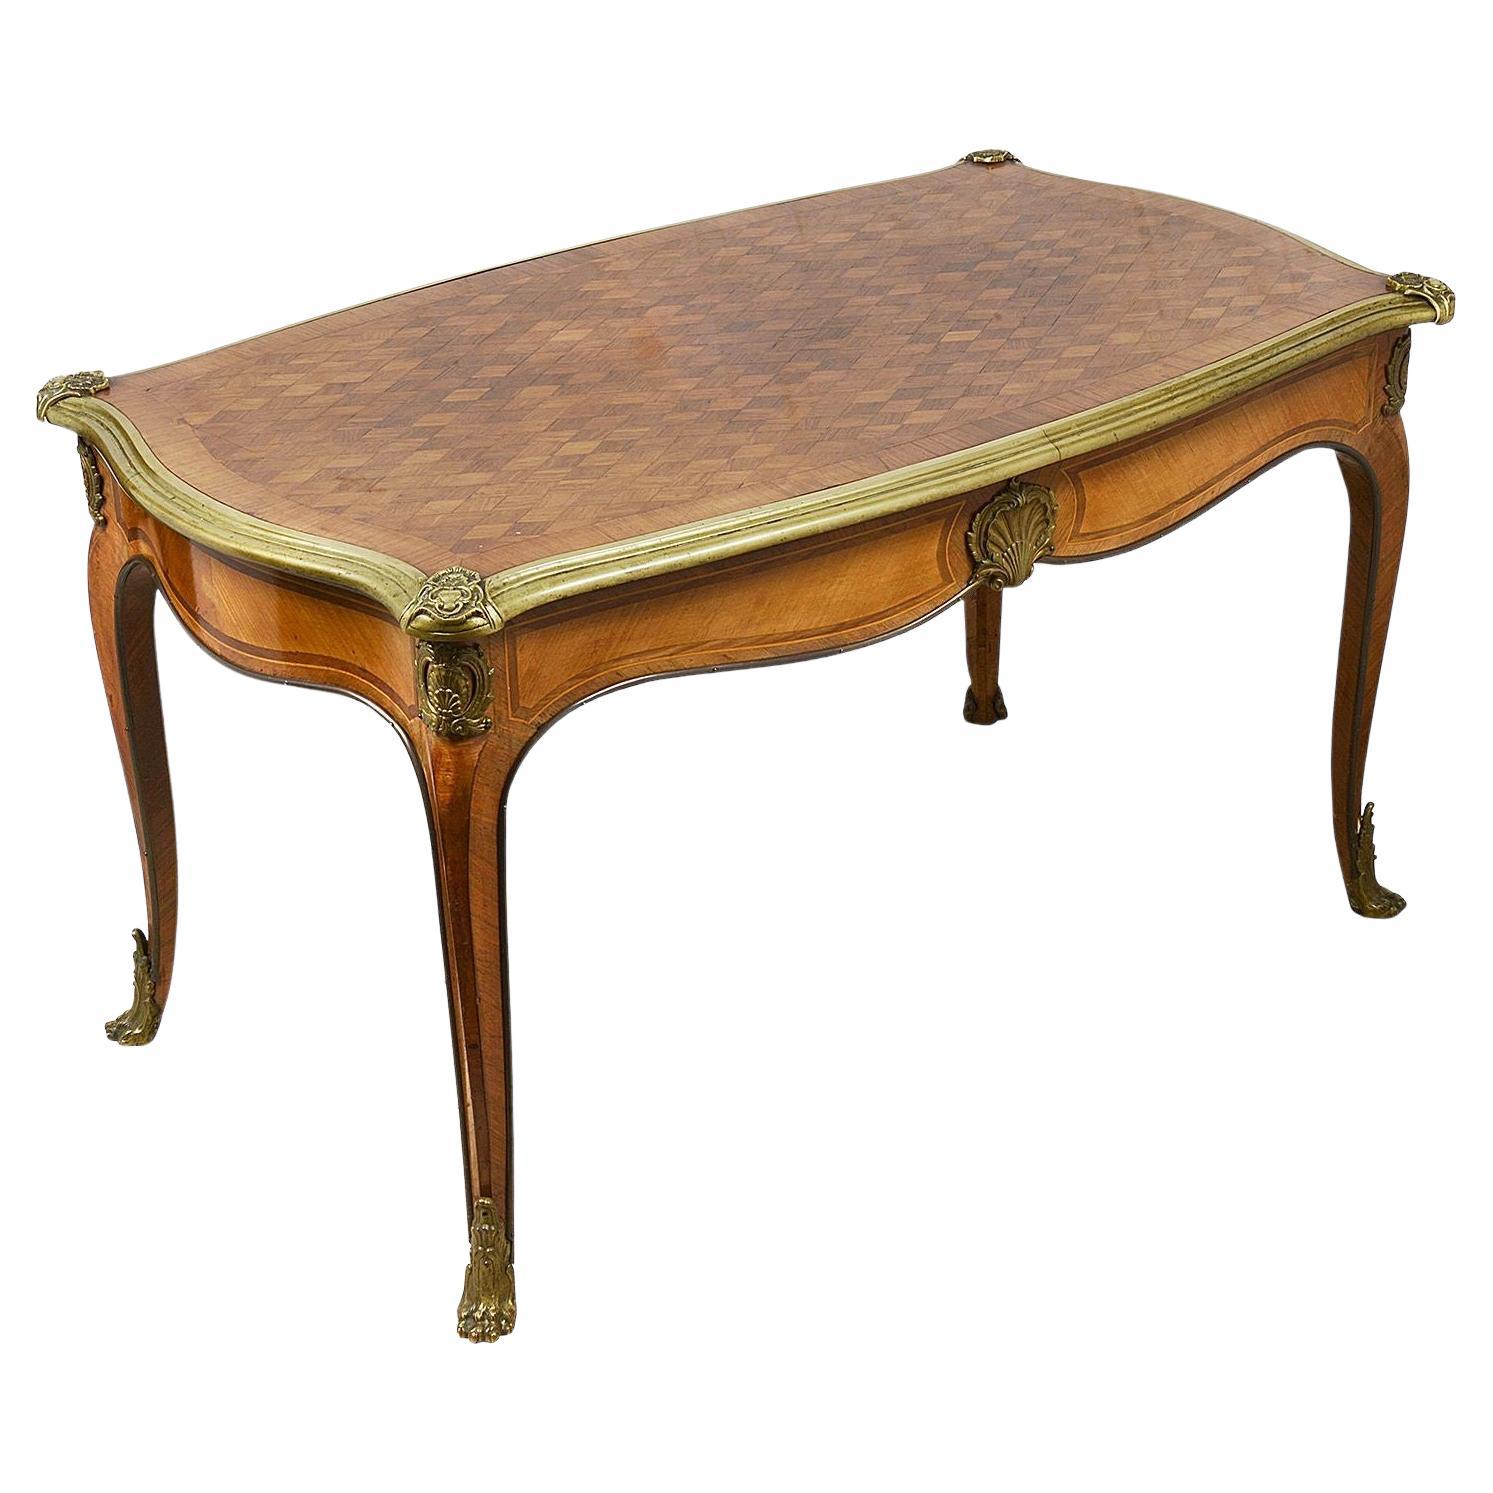 Table d'appoint / table basse Inalid en parqueterie française de la fin du XIXe siècle